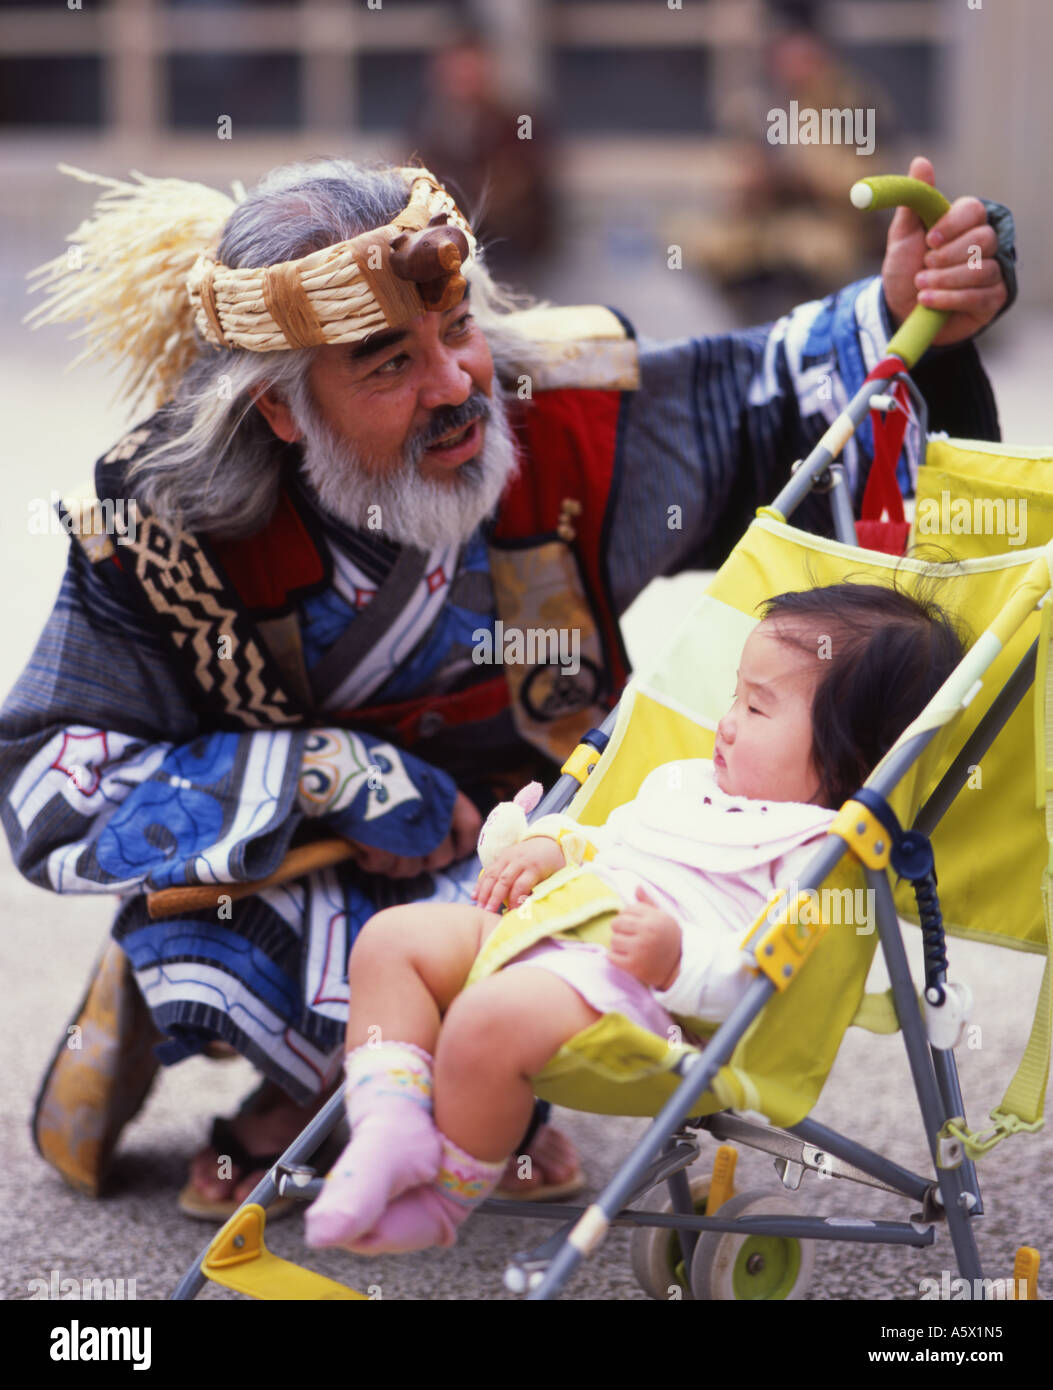 Ainu Mann und Baby - Ainu sind die Ureinwohner von Hokkaido, der nördlichsten Insel Japans. Stockfoto